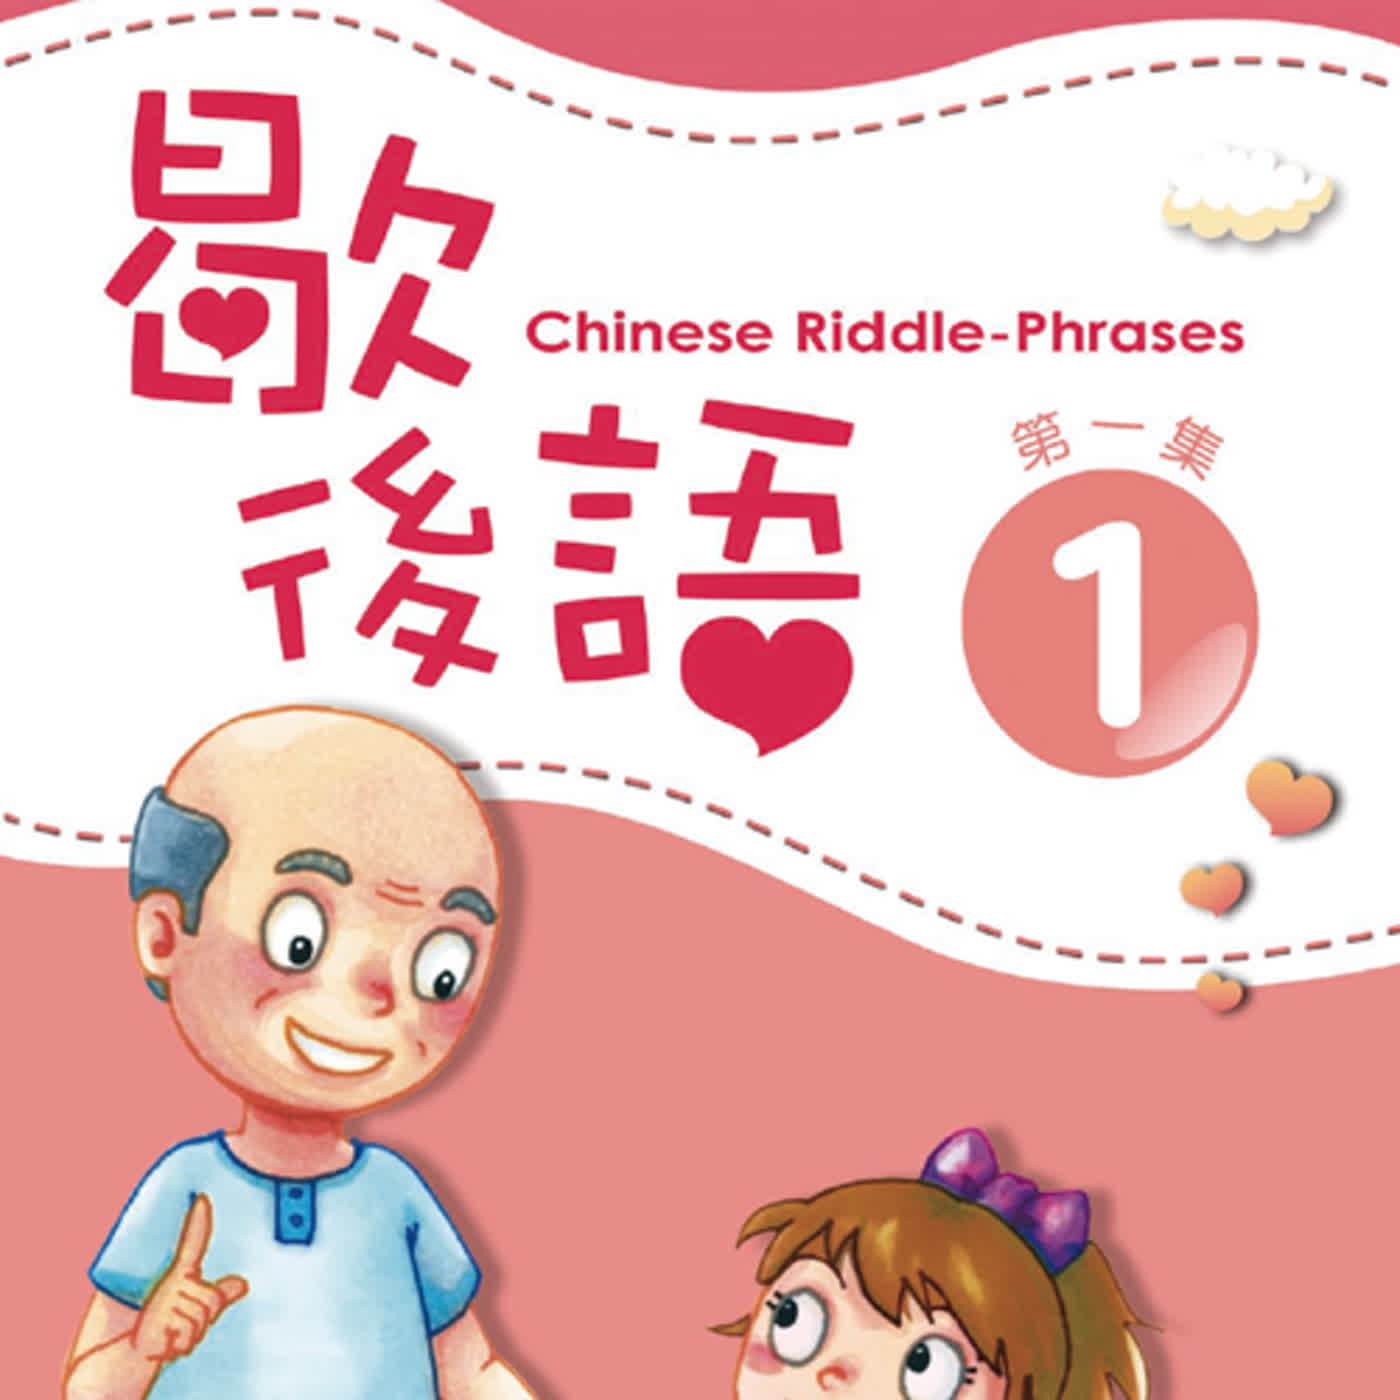 歇後語1 L13  Chinese Riddle-Phrases L13